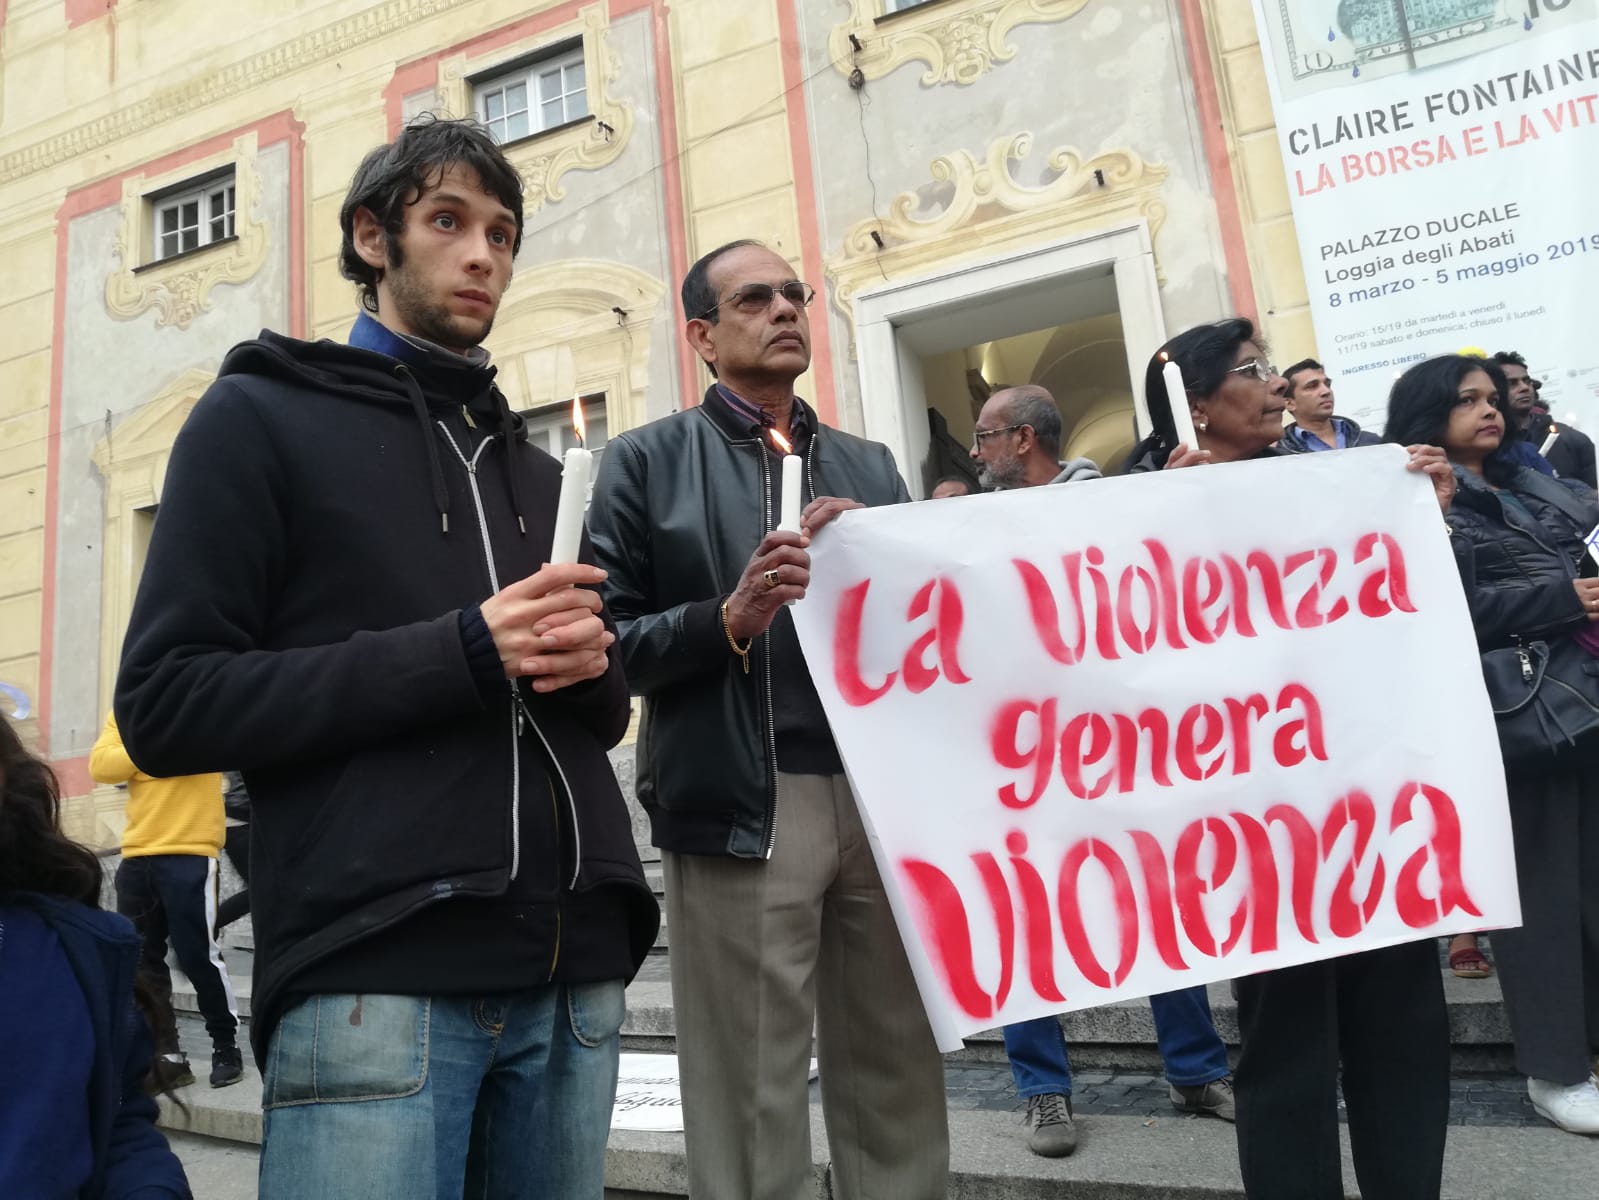 Sri Lanka, la fiaccolata a Genova in ricordo delle vittime degli attentati